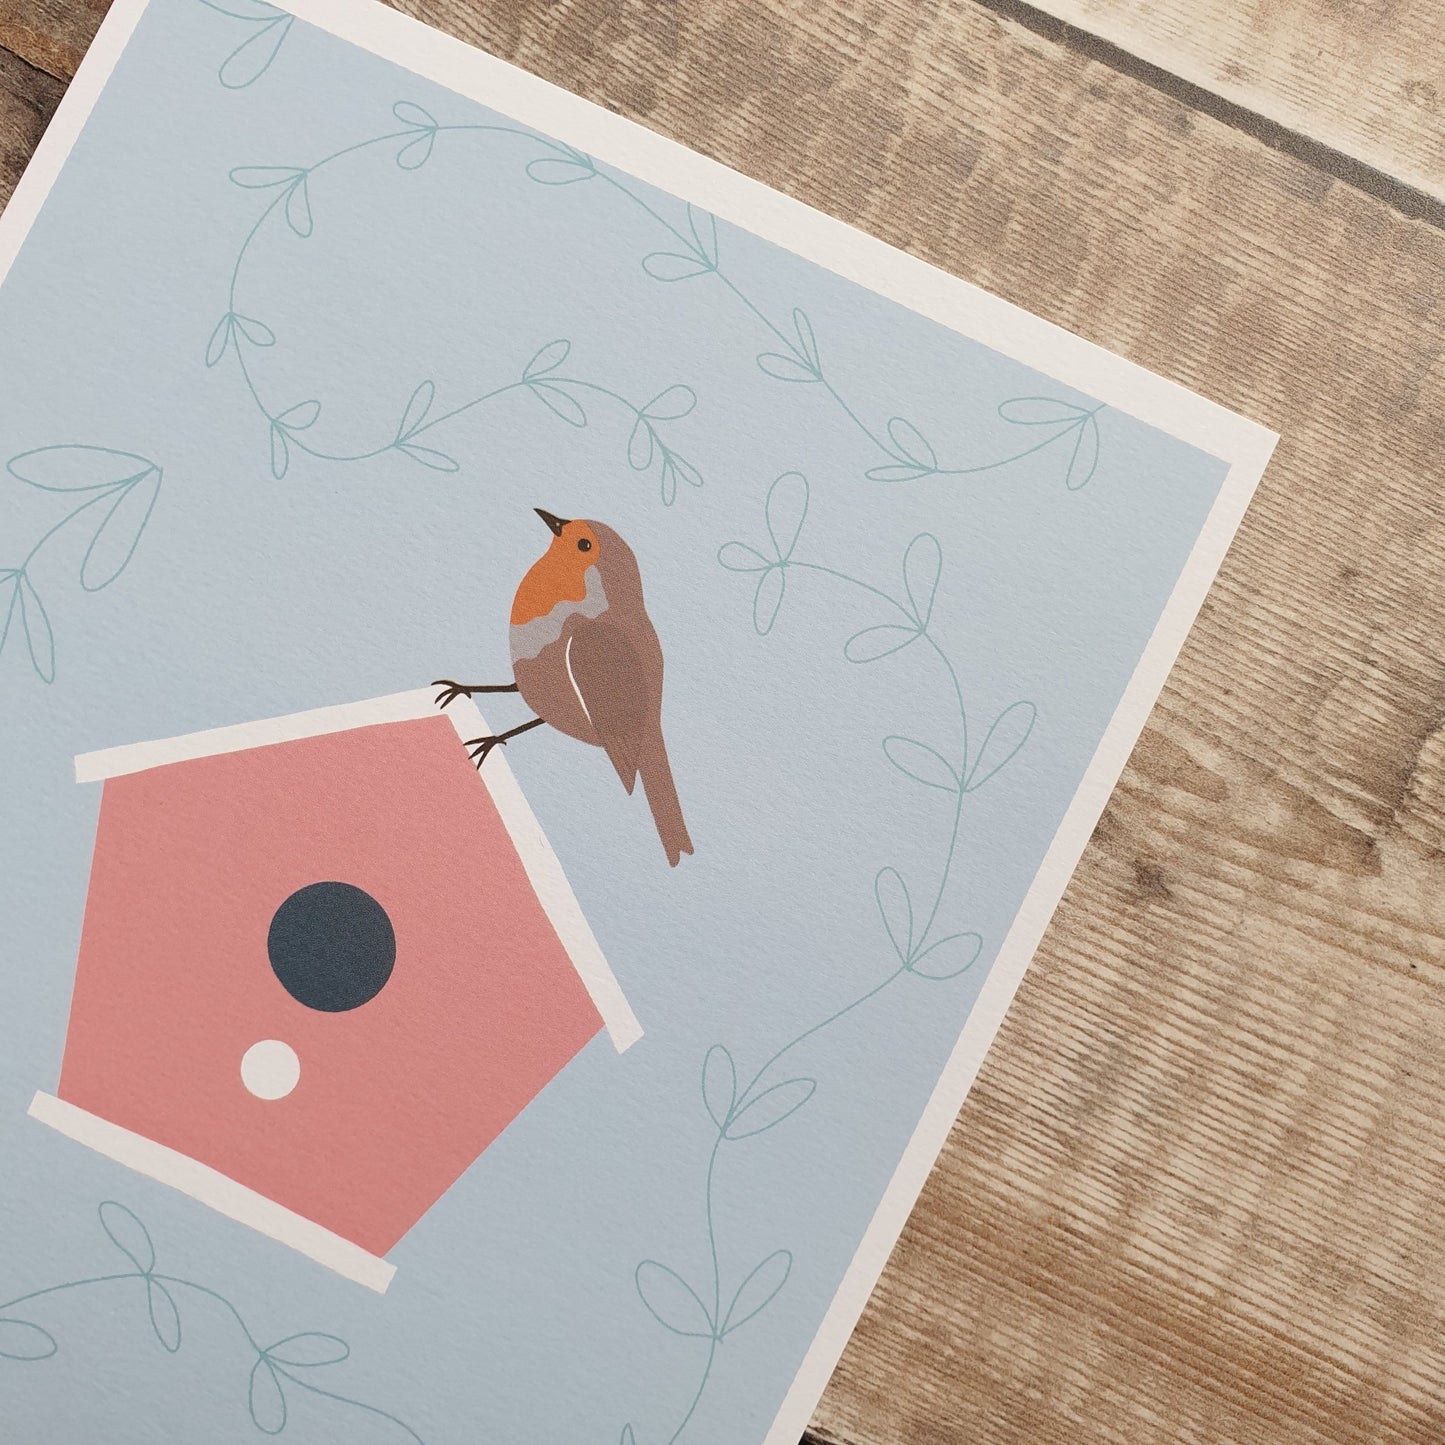 Robin and Birdbox Art Print